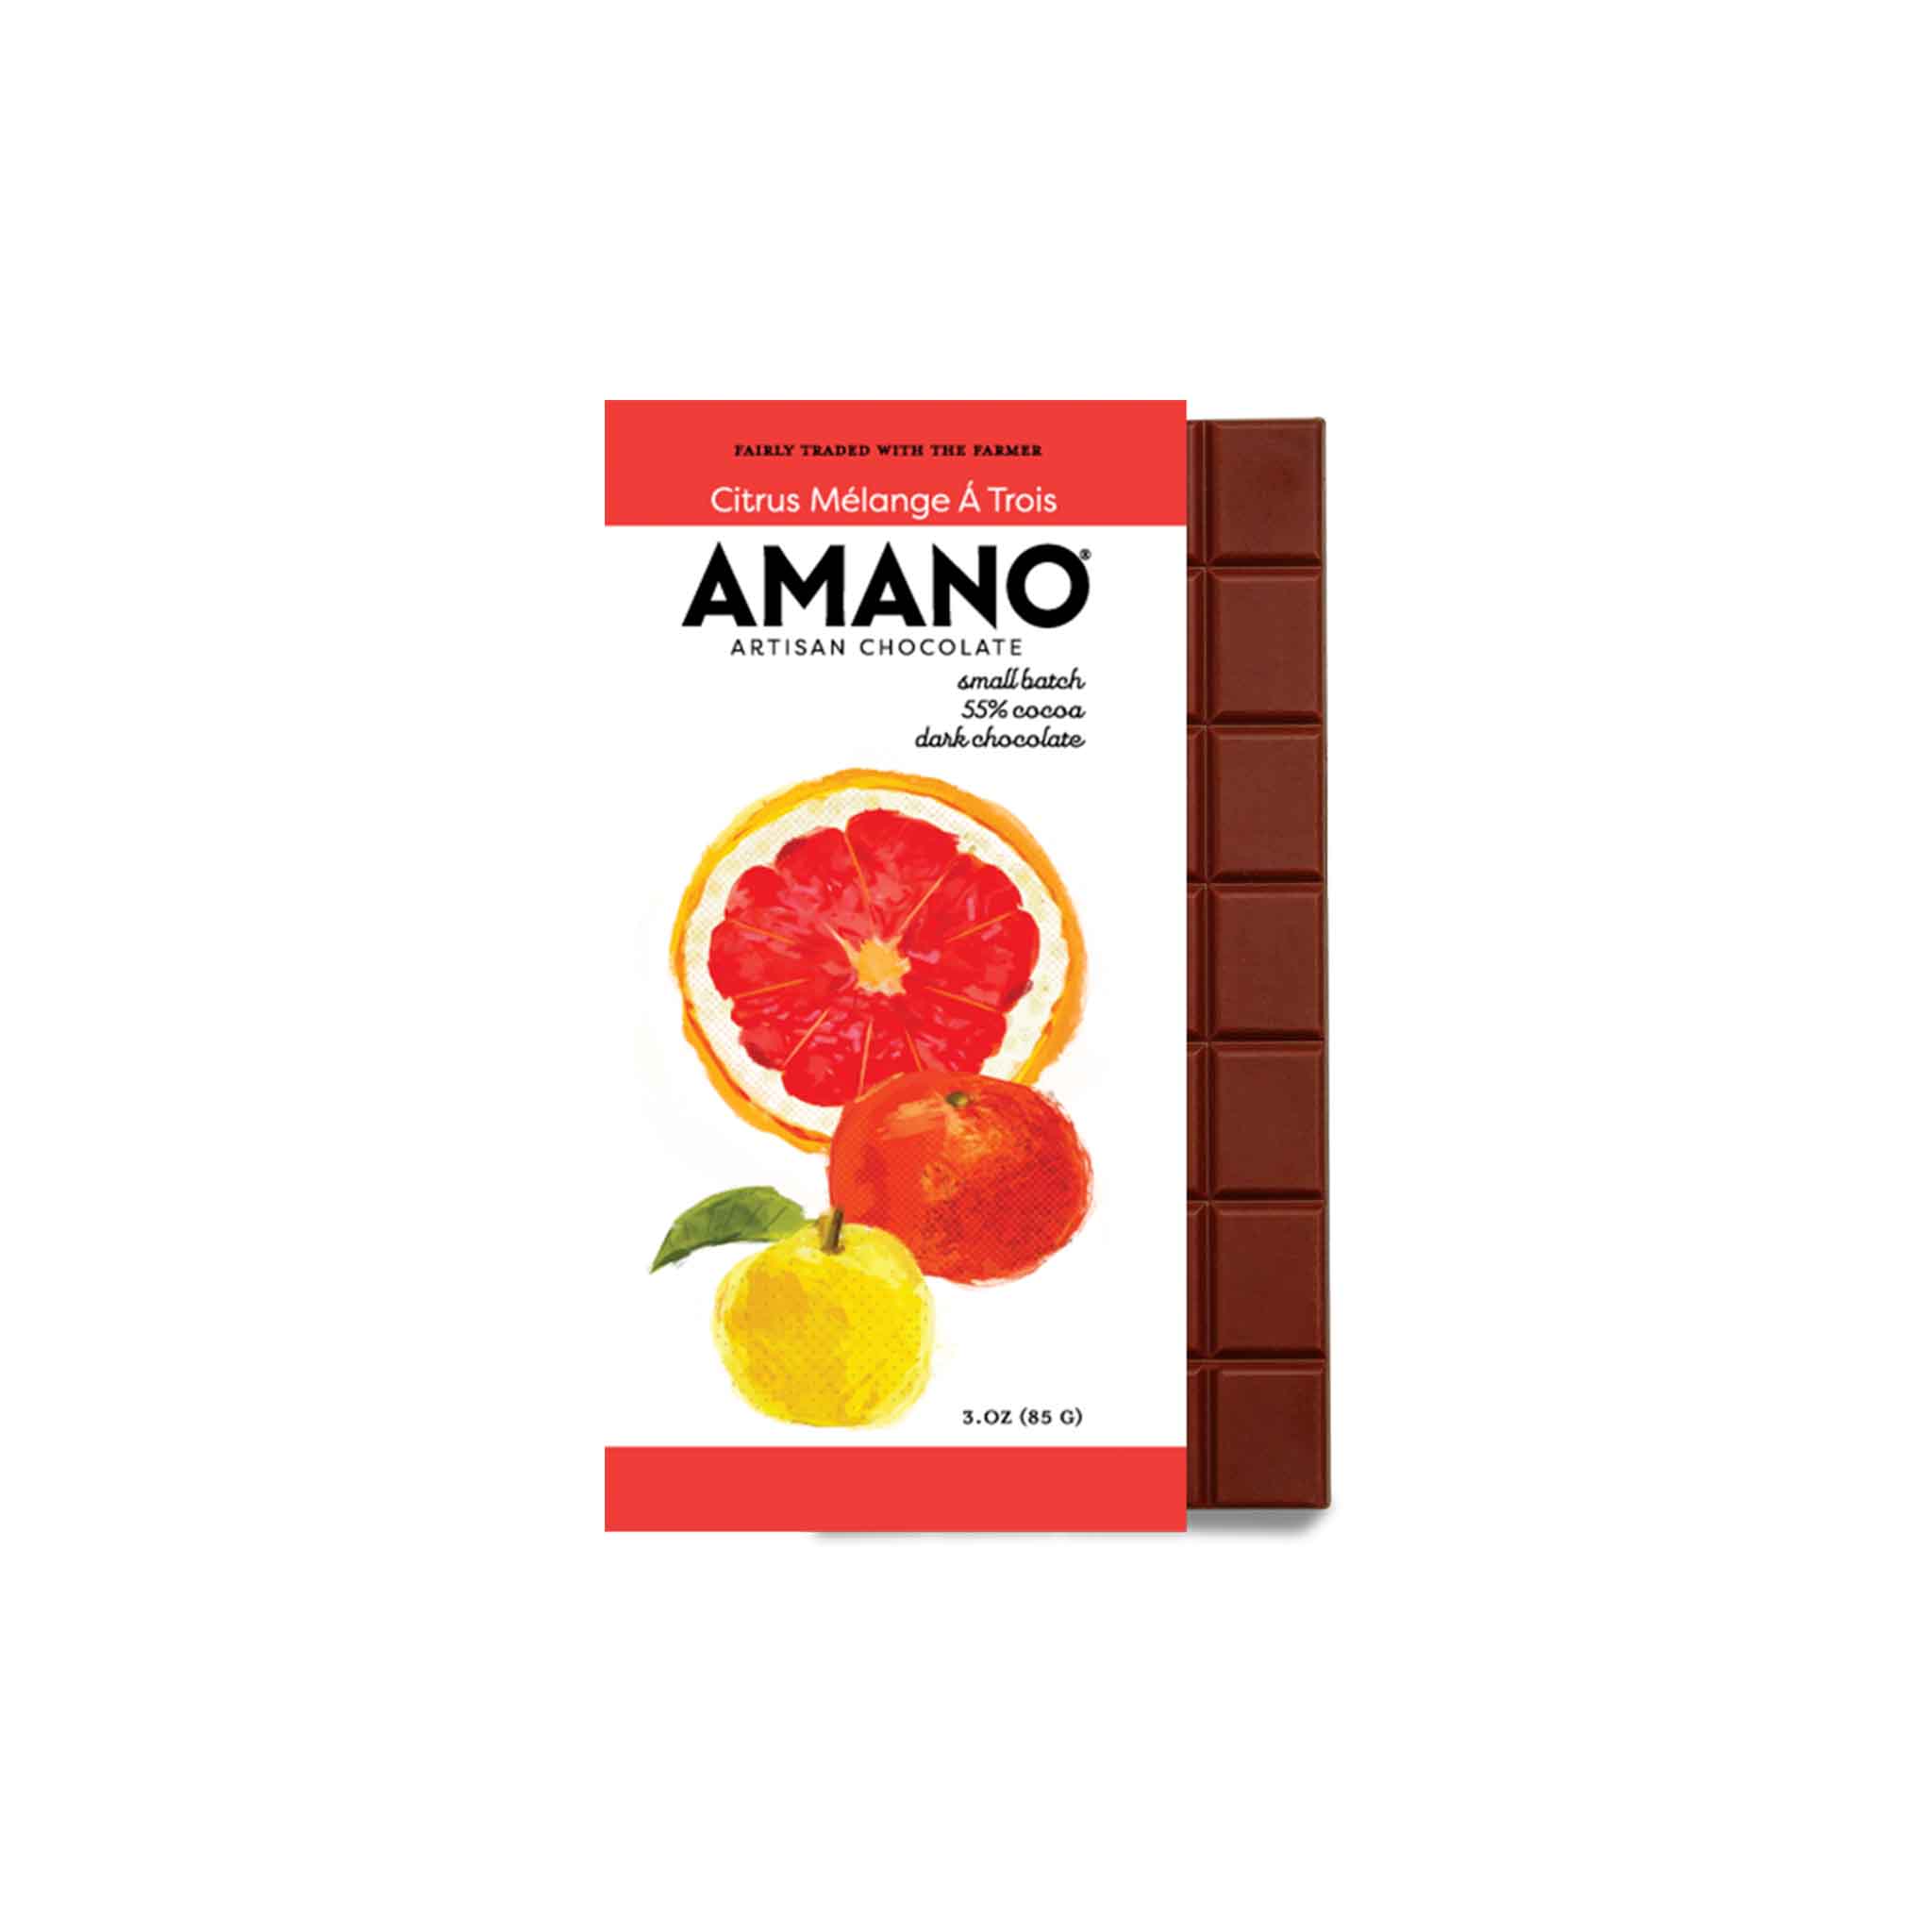 AMANO CITRUS MELANGE TROIS 55% COCOA DARK CHOCOLATE 3oz